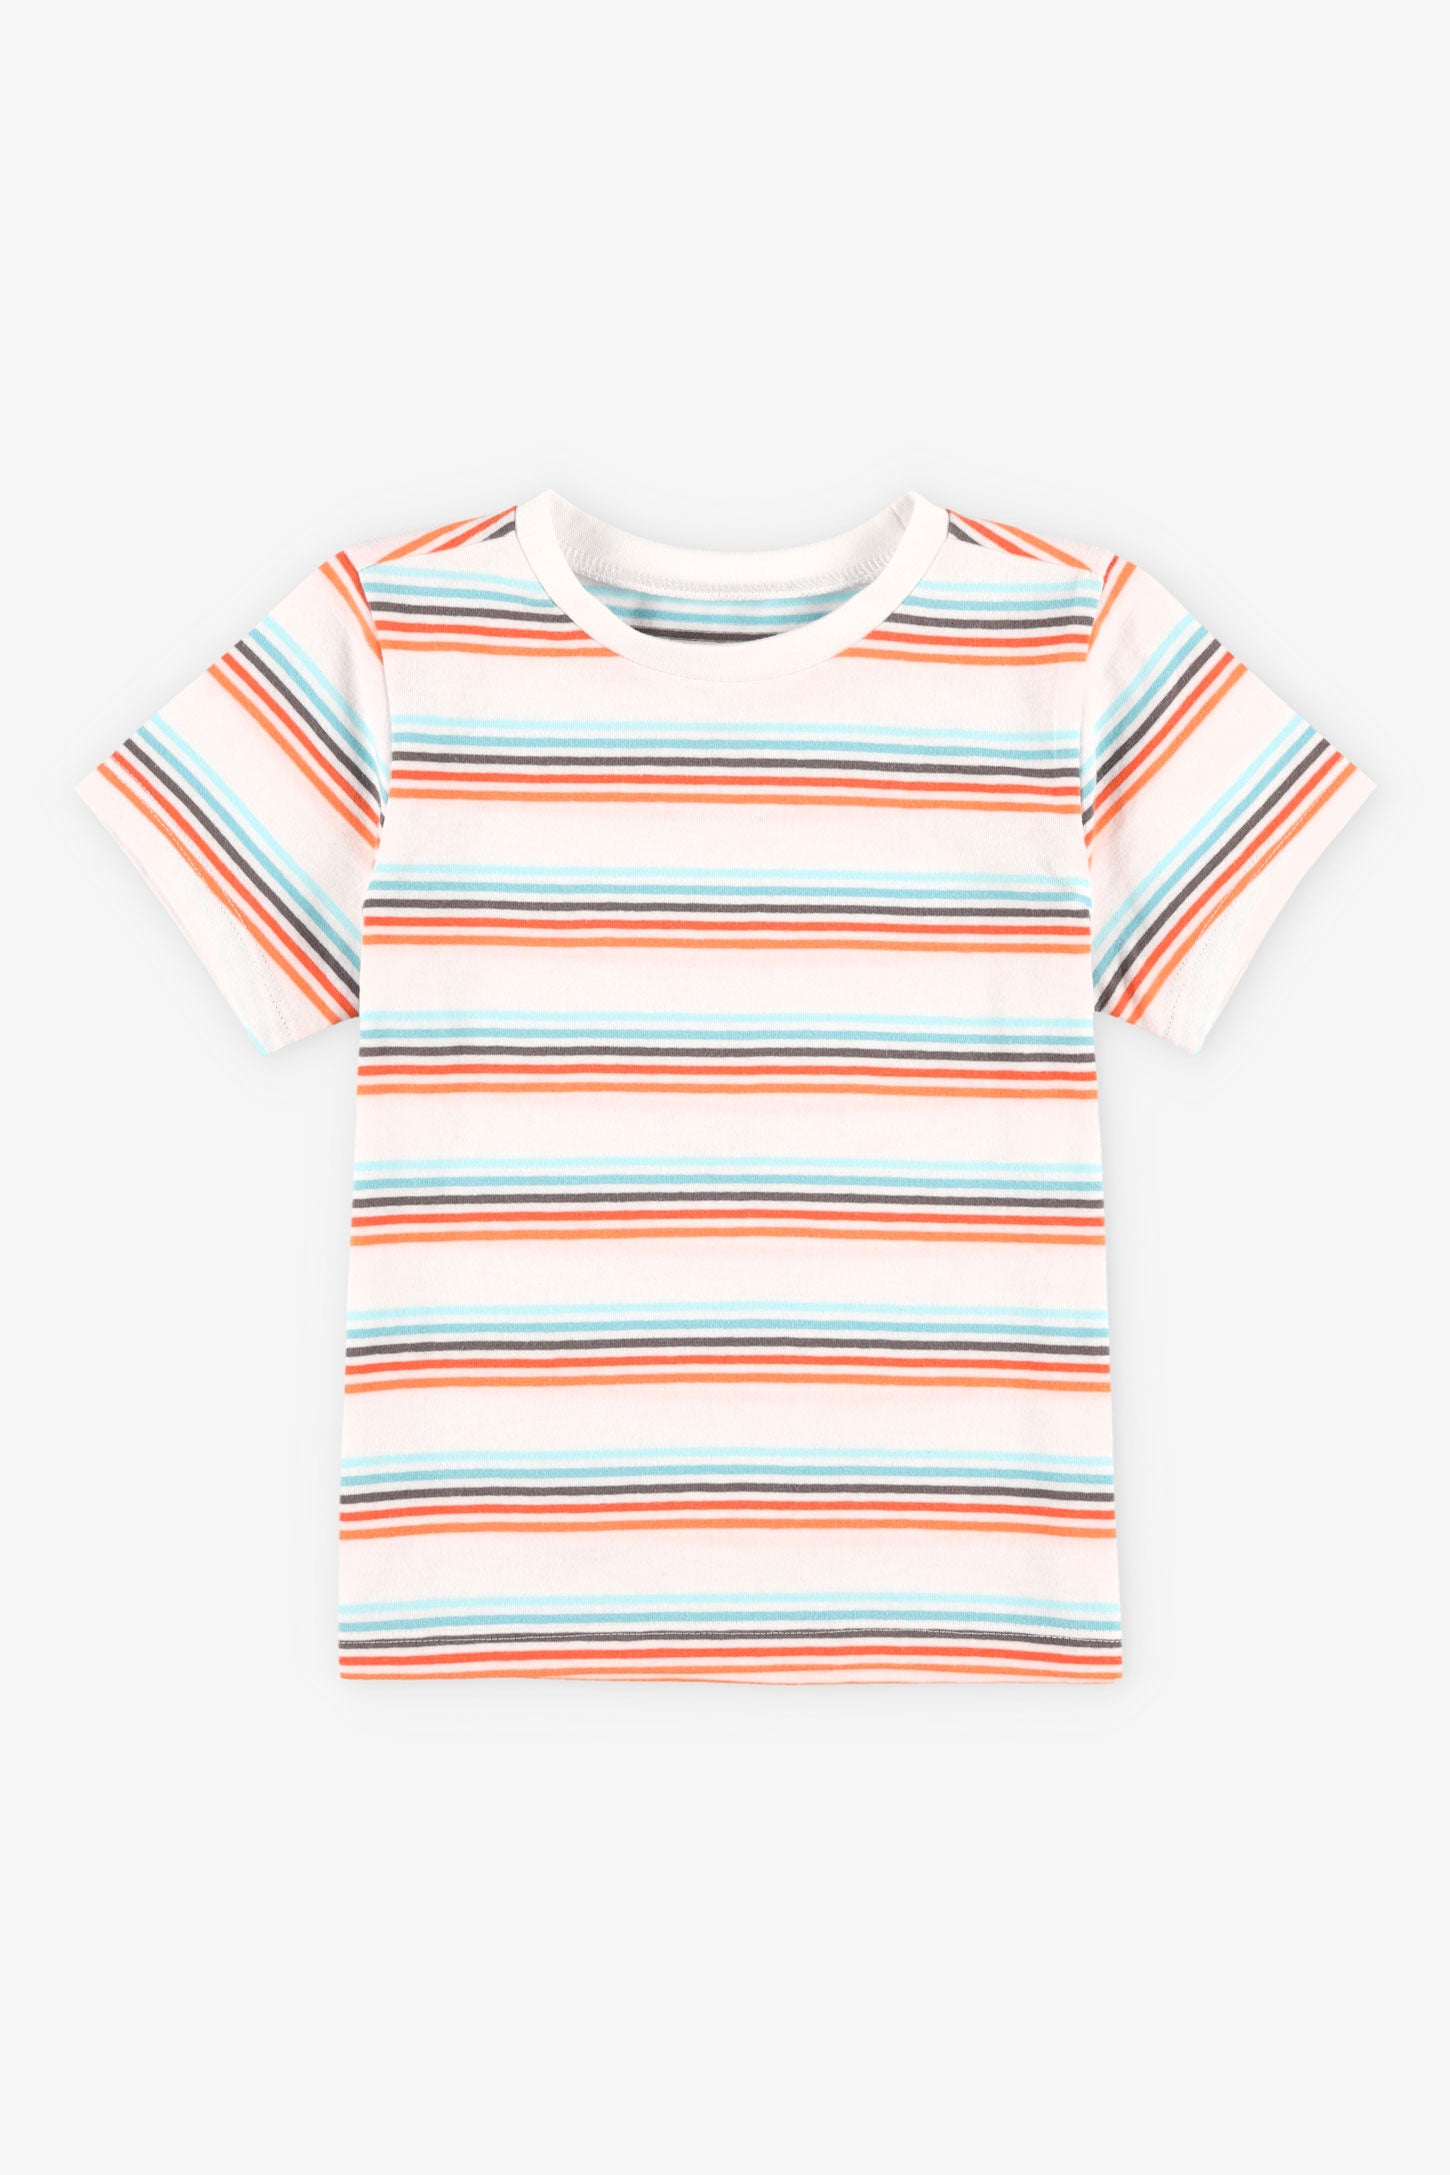 T-shirt col rond à imprimé coton, 2T-3T, 2/15$ - Bébé garçon && BLANC MULTI